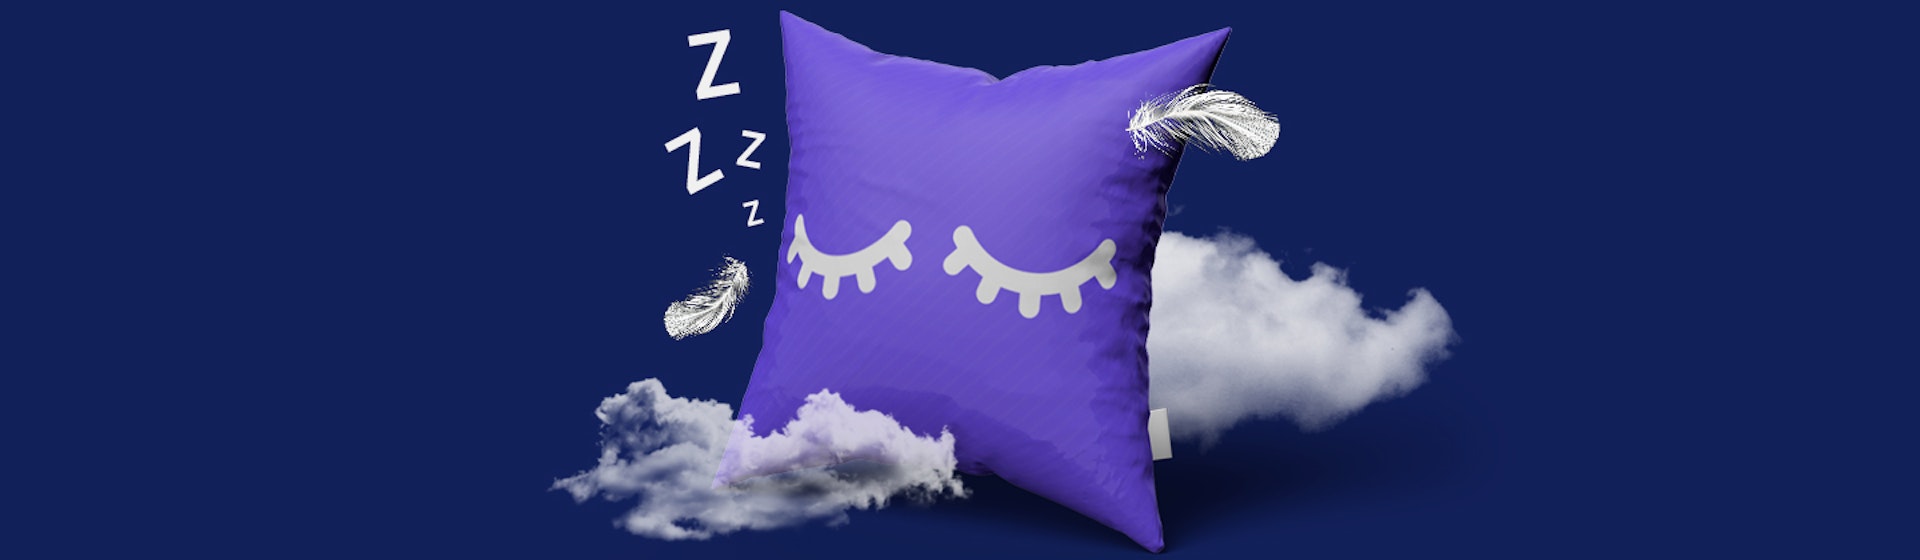 ¿Cómo dormir mejor? 10 consejos que prometen vencer el insomnio